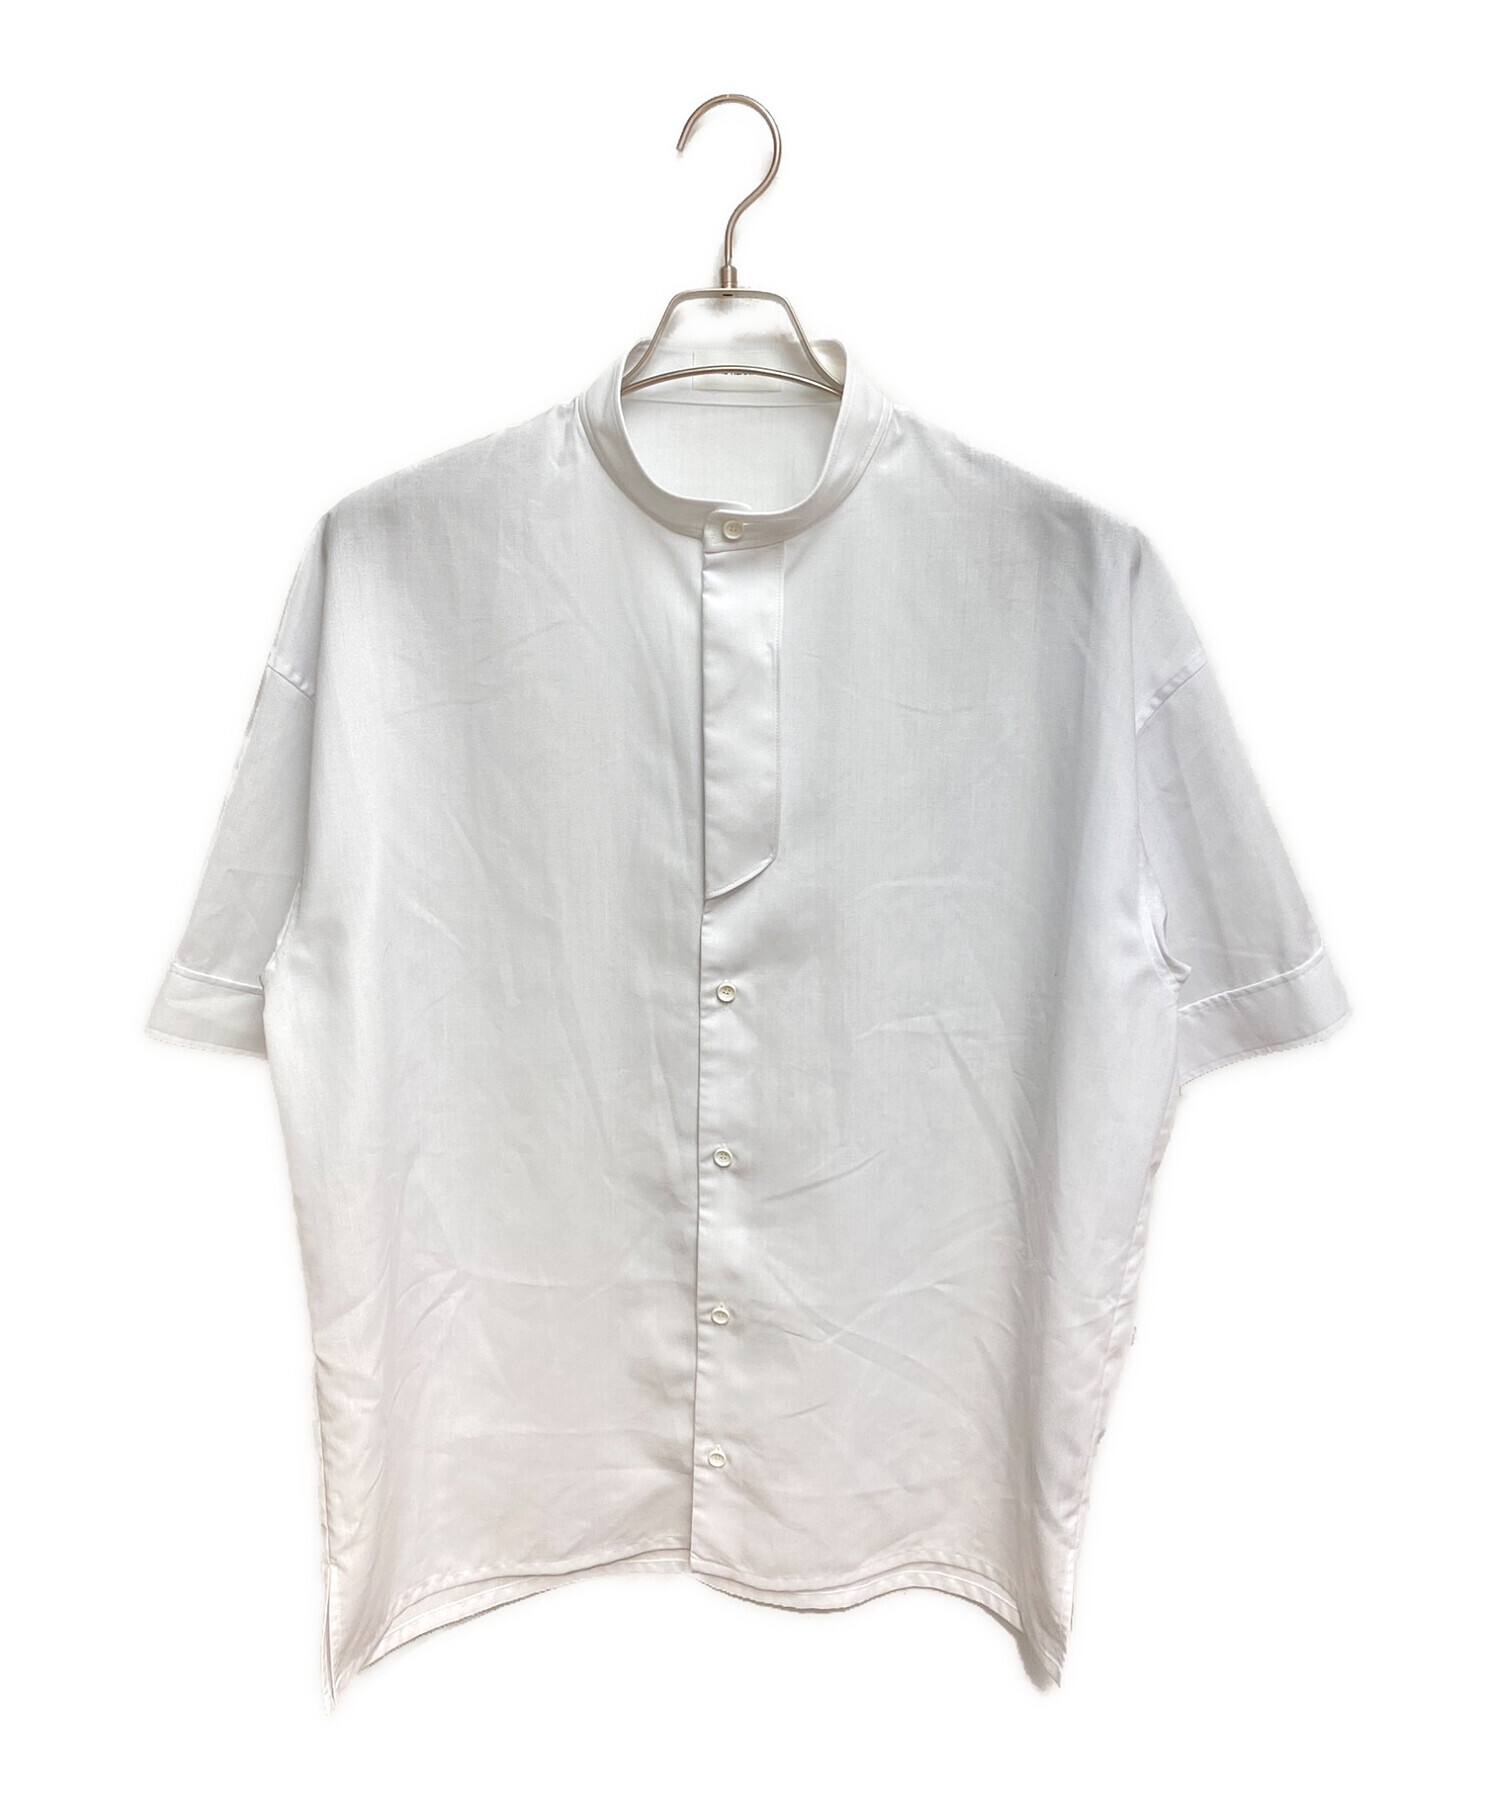 THE RERACS (ザ リラクス) ショートスリーブプラケットシャツ ホワイト サイズ:46